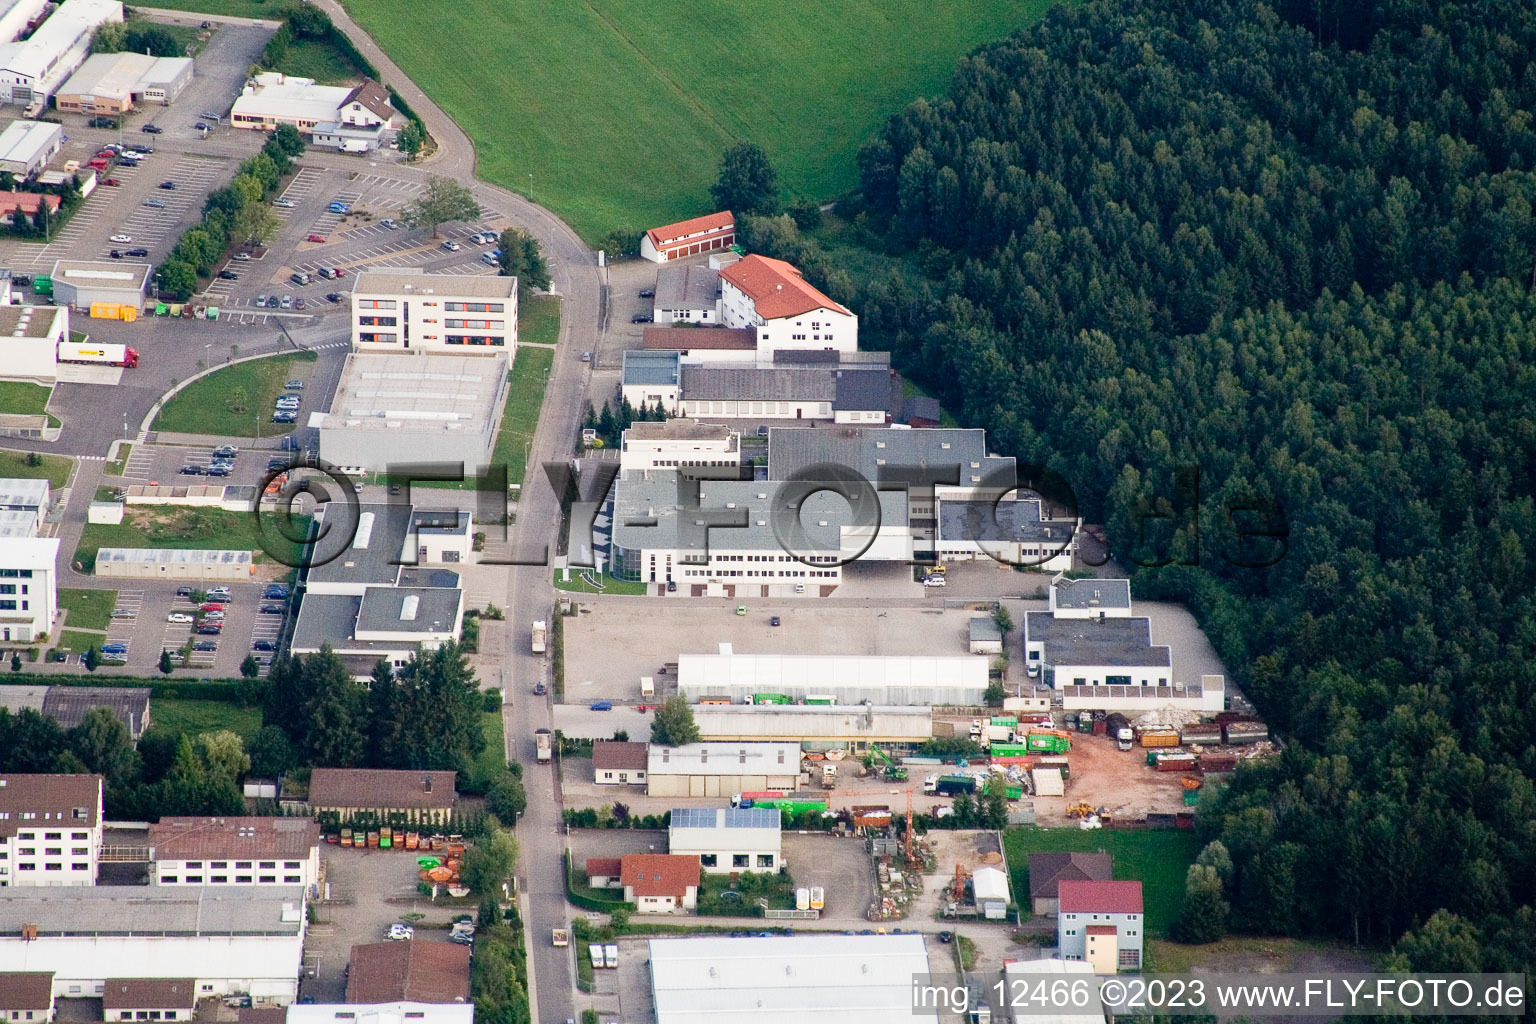 Ittersbach, zone industrielle à le quartier Im Stockmädle in Karlsbad dans le département Bade-Wurtemberg, Allemagne d'en haut